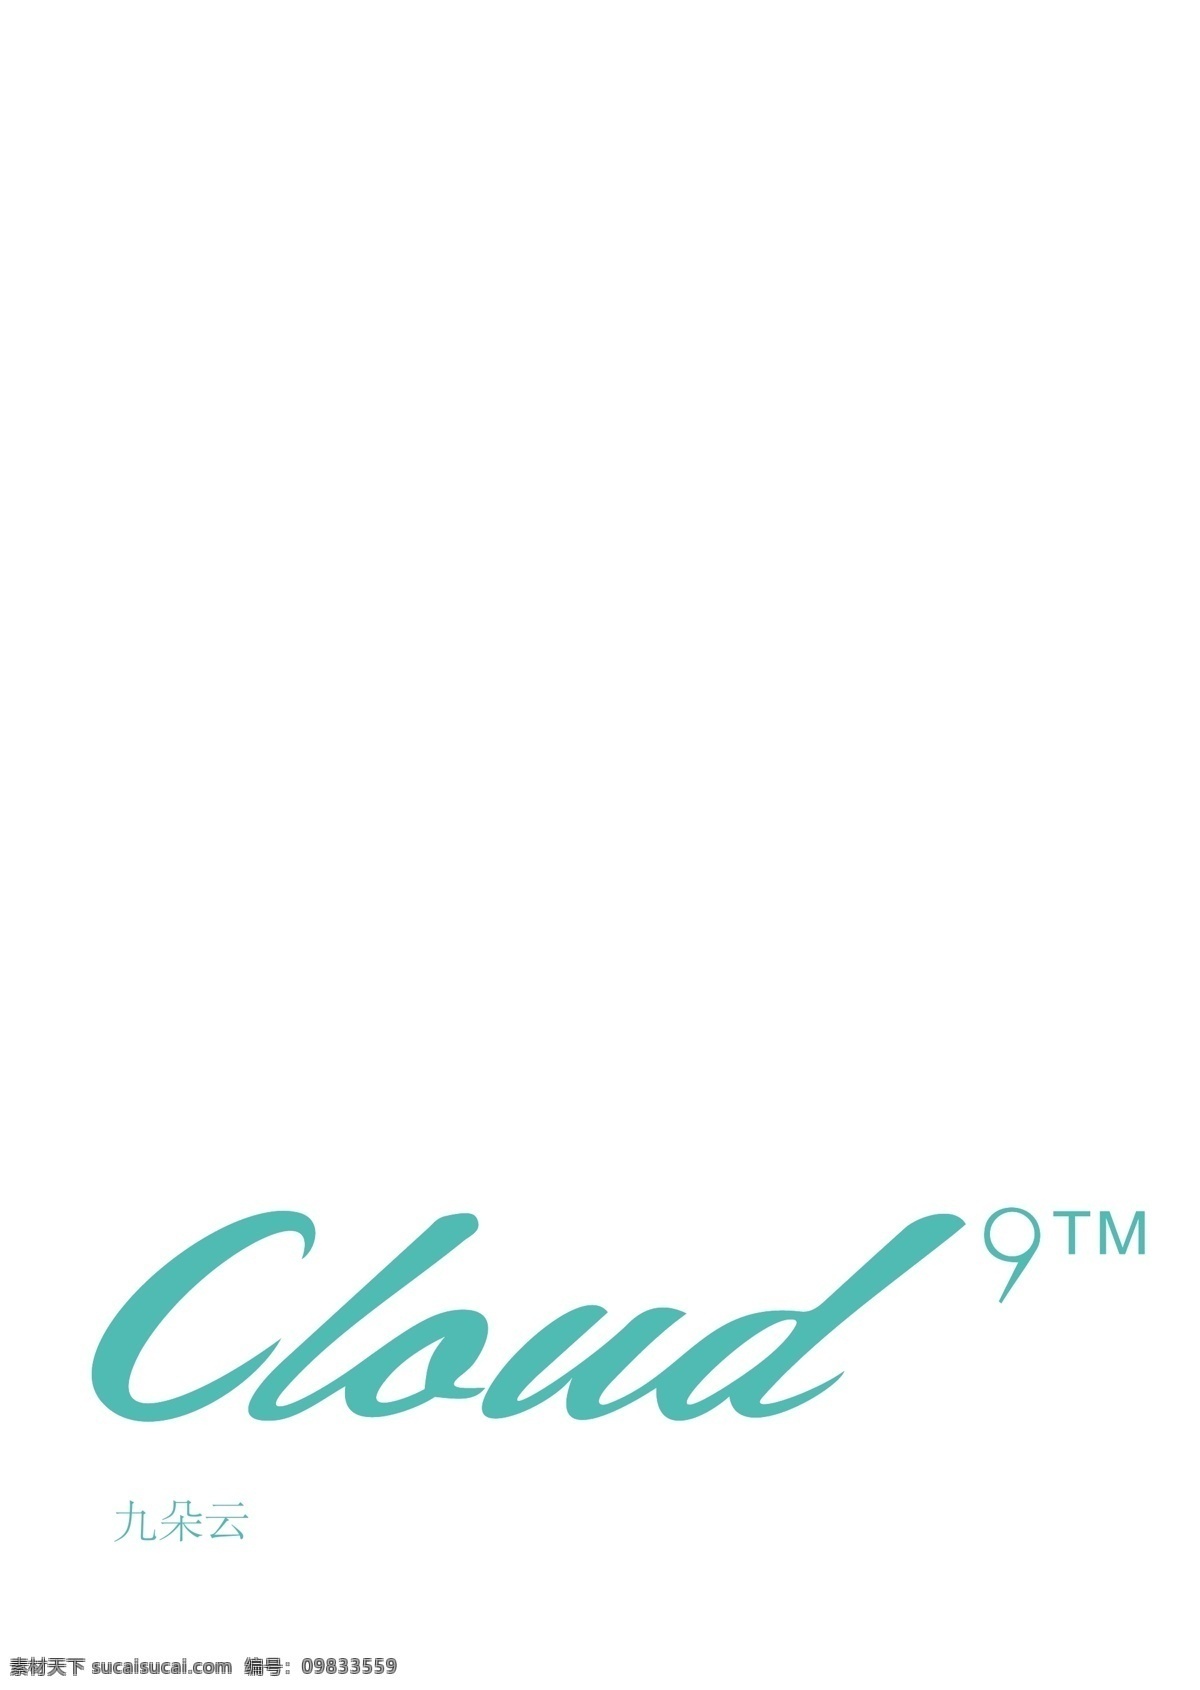 九 朵 云 化妆品 logo 九朵云 标志 蓝色 分层